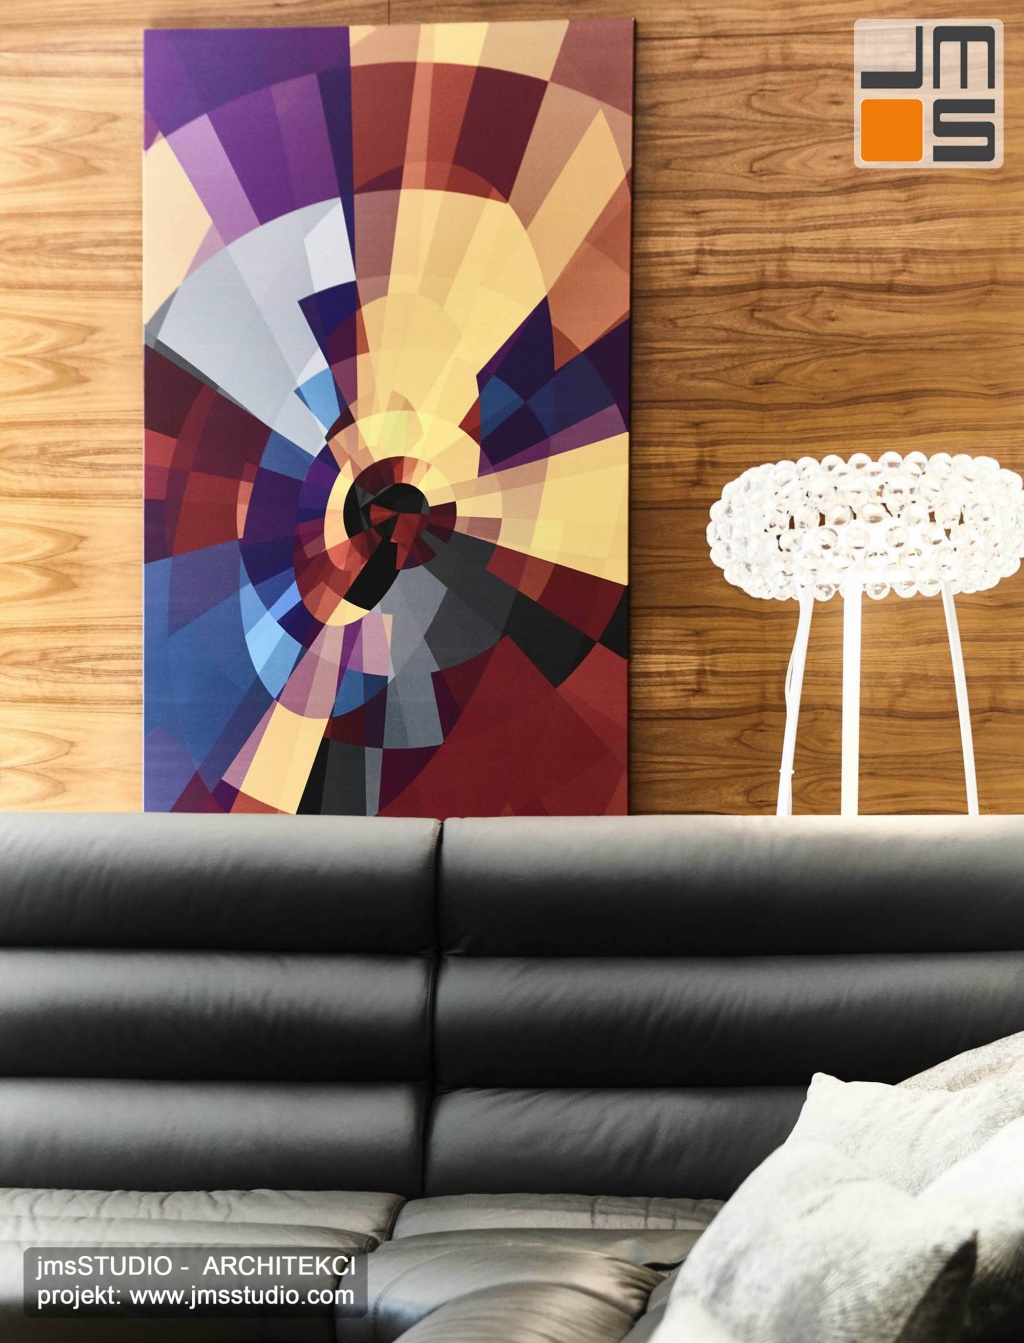 2018 06 abstrakcyjny obraz w formie mocnej kolorowej  grafiki świetnie komponuje się w projekcie wnętrz z drewnem orzechowym i lampą caboch na tle szarej sofy